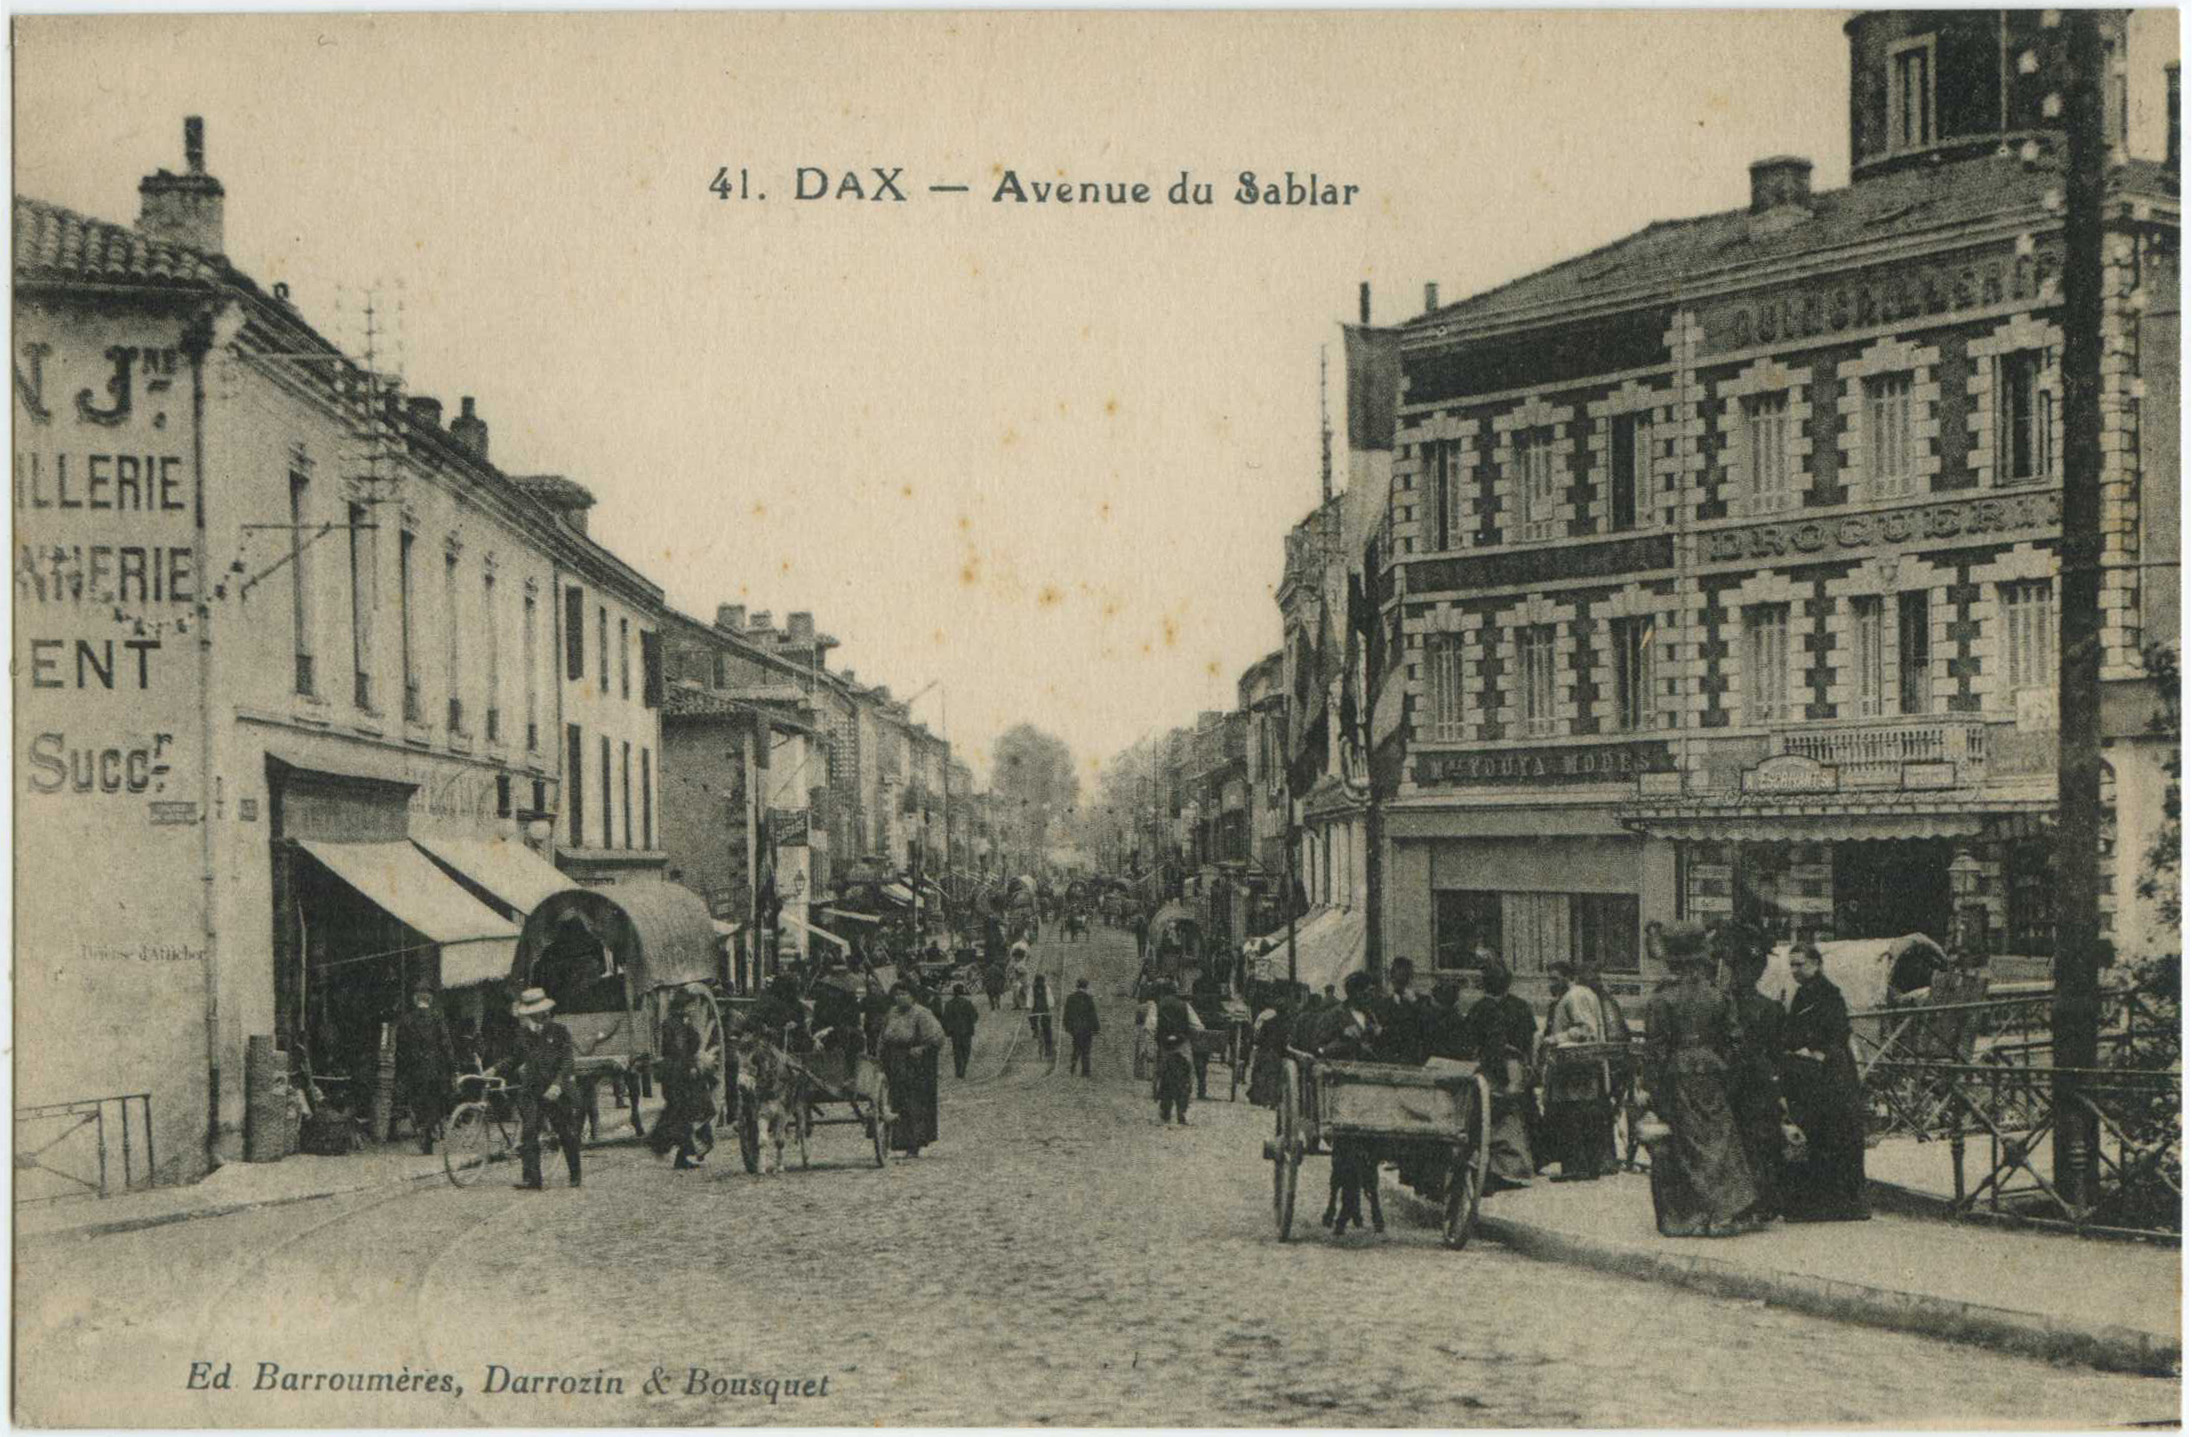 Dax - Avenue du Sablar